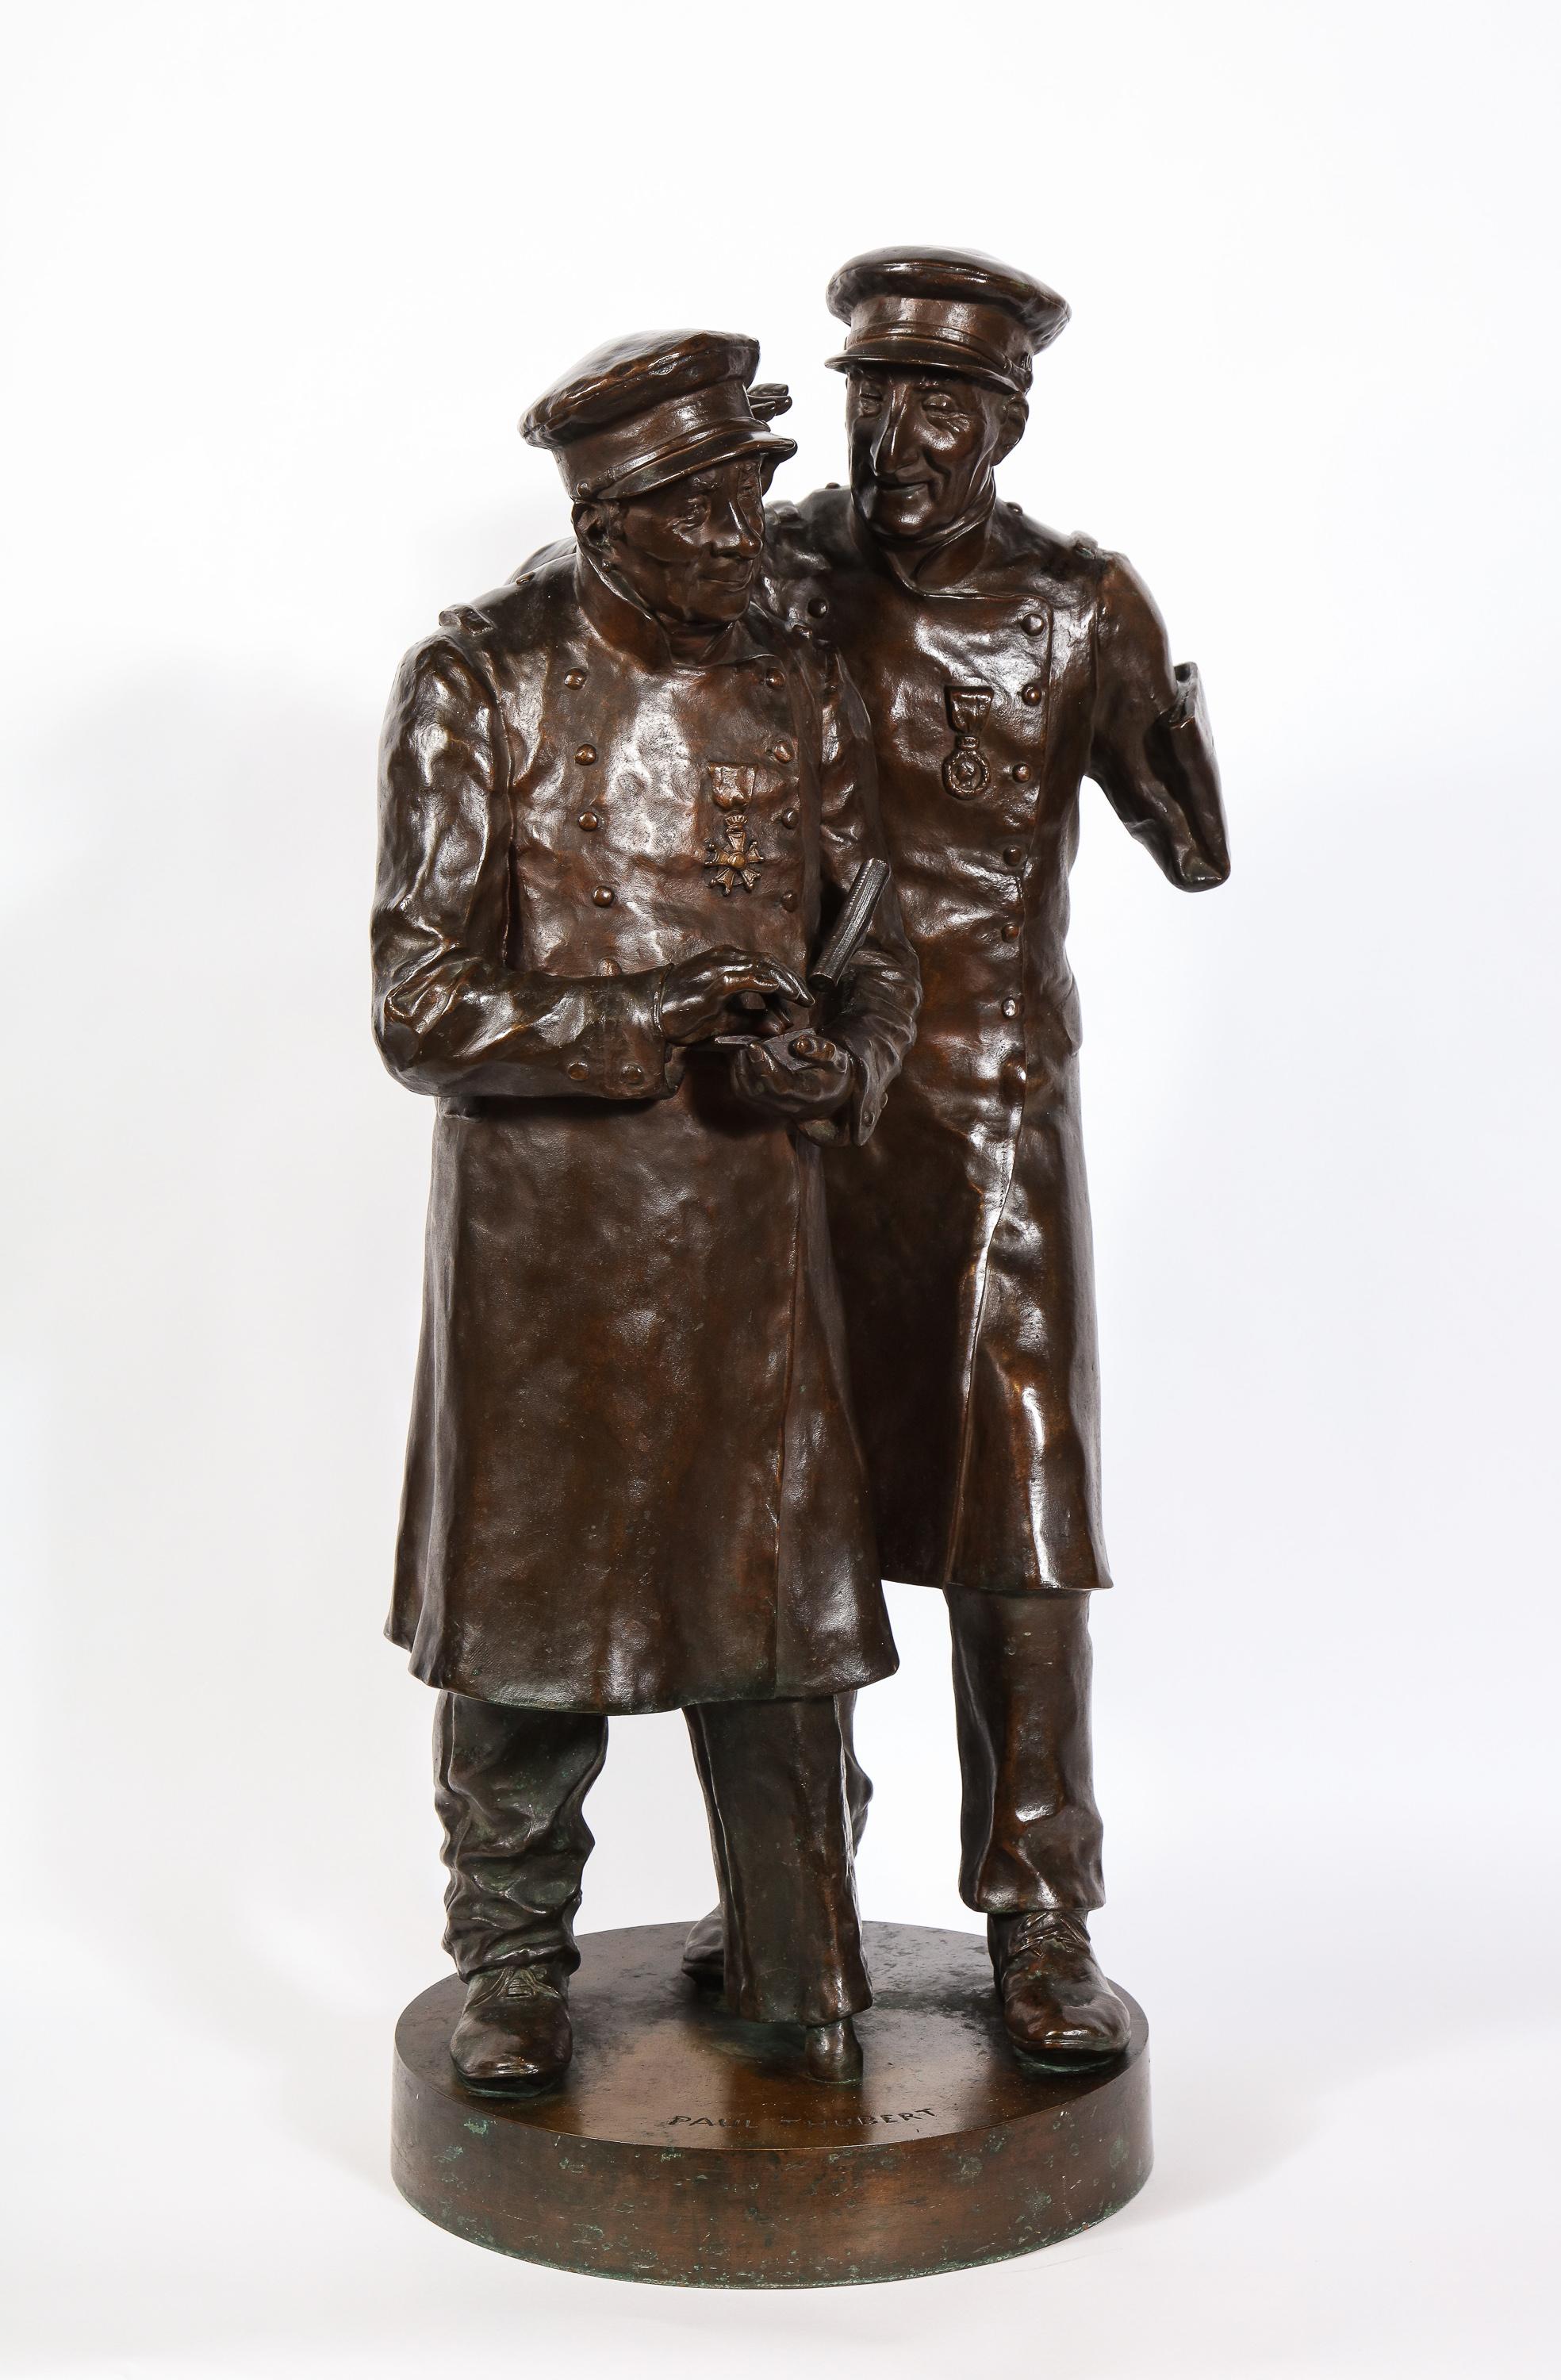 Paul Thubert 
(Englisch, 19. Jahrhundert) 

Eine große patinierte Bronzeskulptur, die zwei Kriegsveteranen mit Uniformen und Abzeichen darstellt. Beide mit Amputationsverletzungen. Einer mit einem amputierten Arm, der andere mit einem amputierten